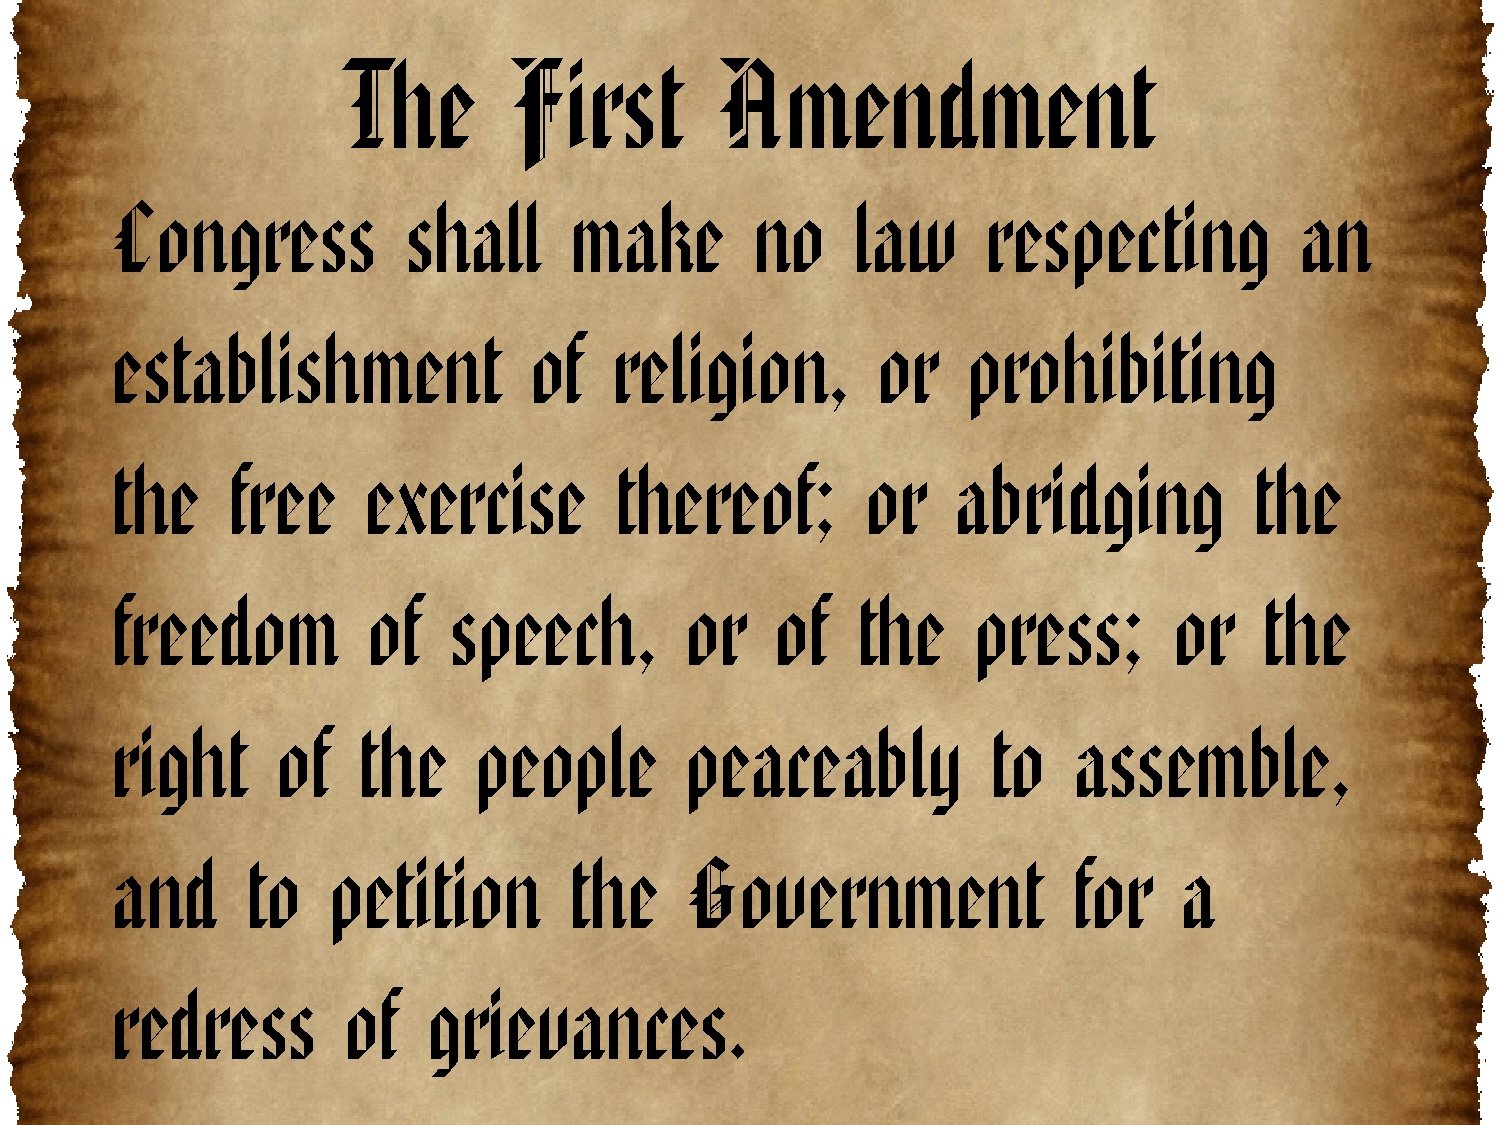 First amendment rights